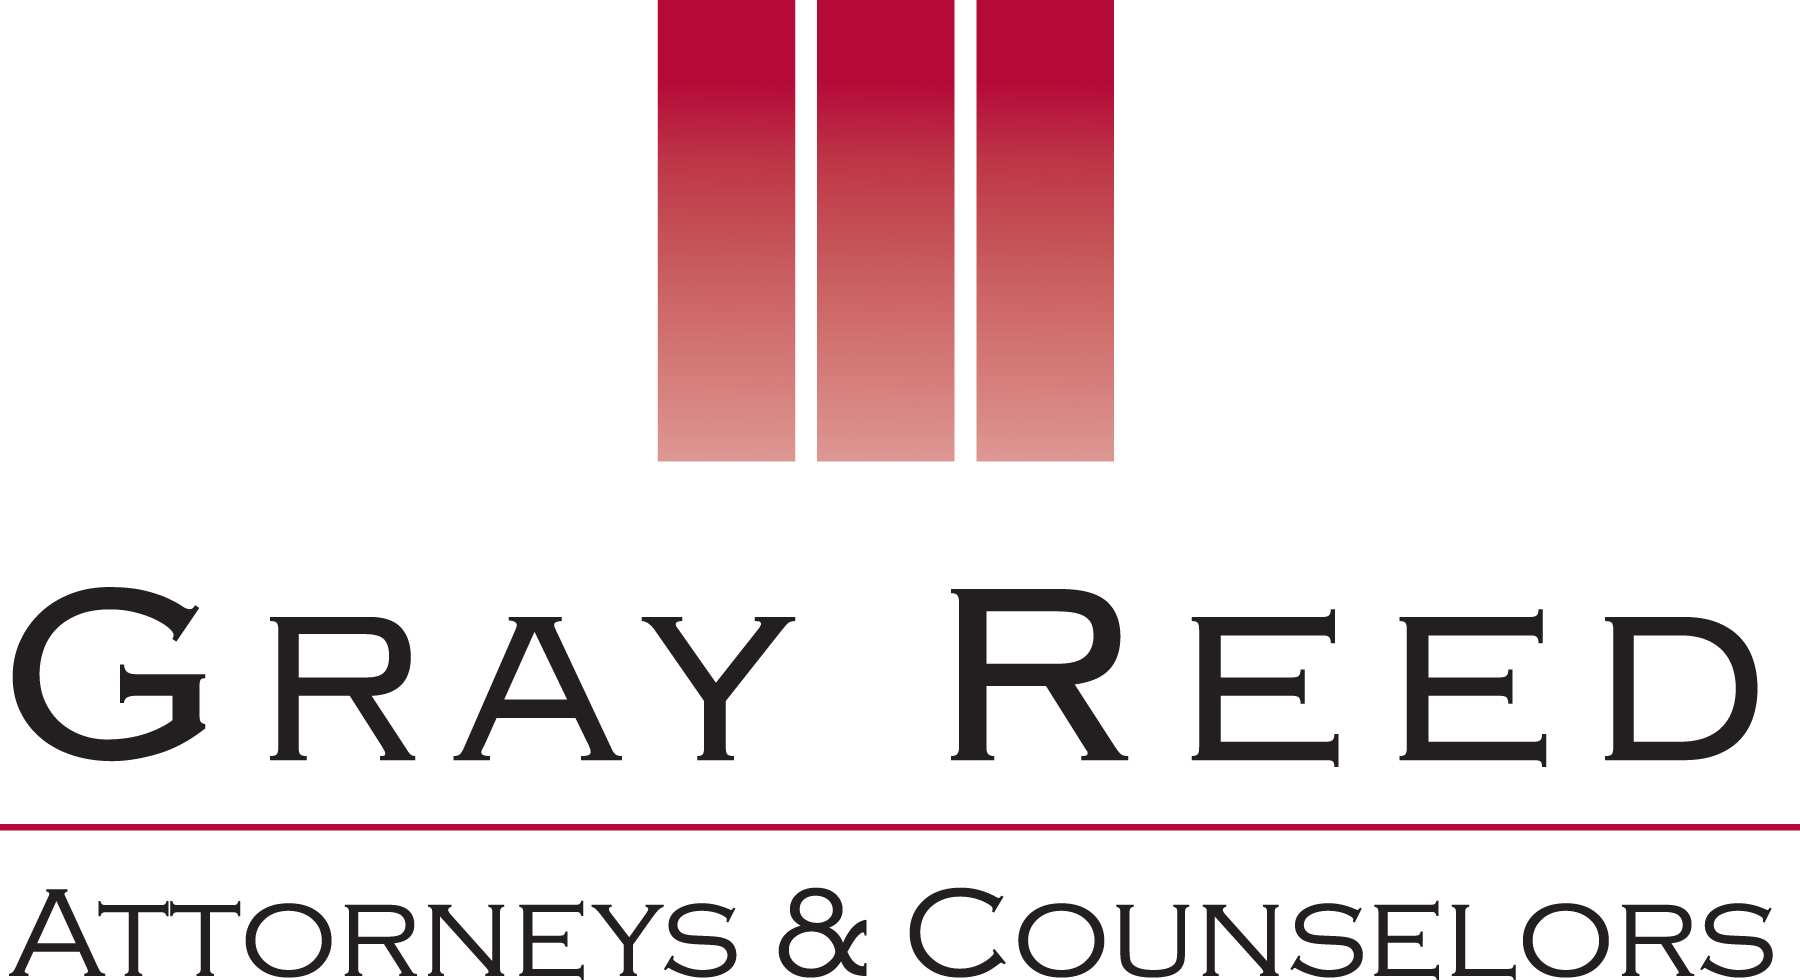 Gray_Reed_Logo_Sponsors_.jpg